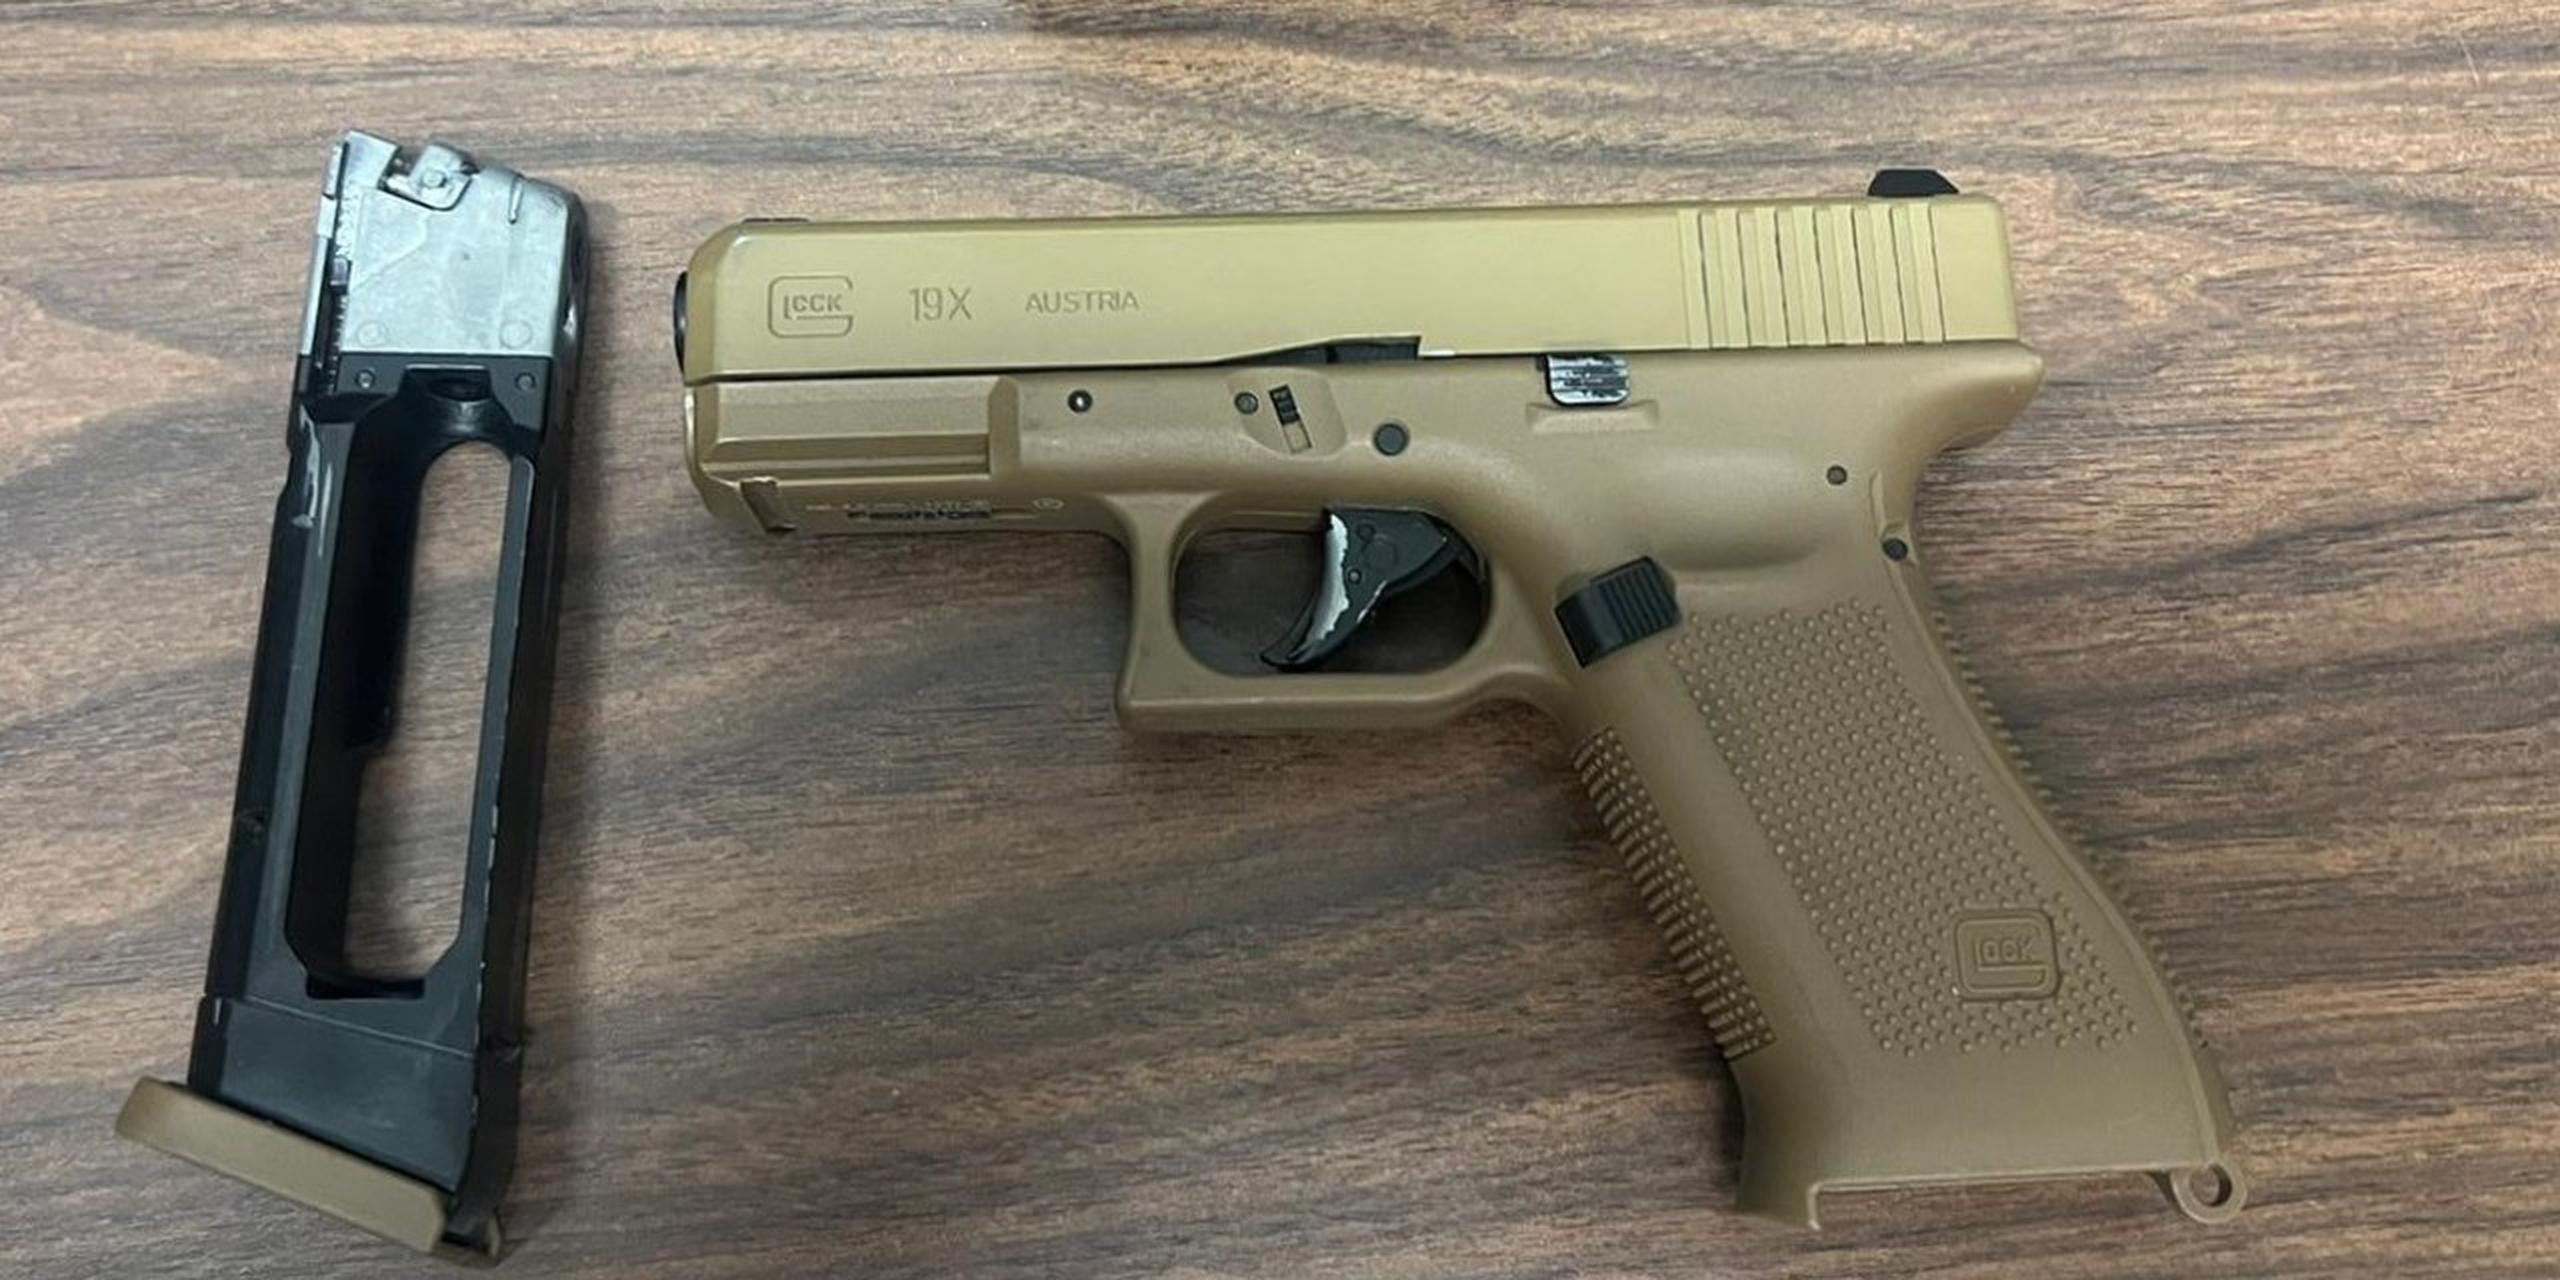 El arma que es una réplica de una pistola Glock calibre 9 milímetros fue ocupada a un joven que la mostró durante la pelea, según consta en un vídeo difundido en las redes sociales.